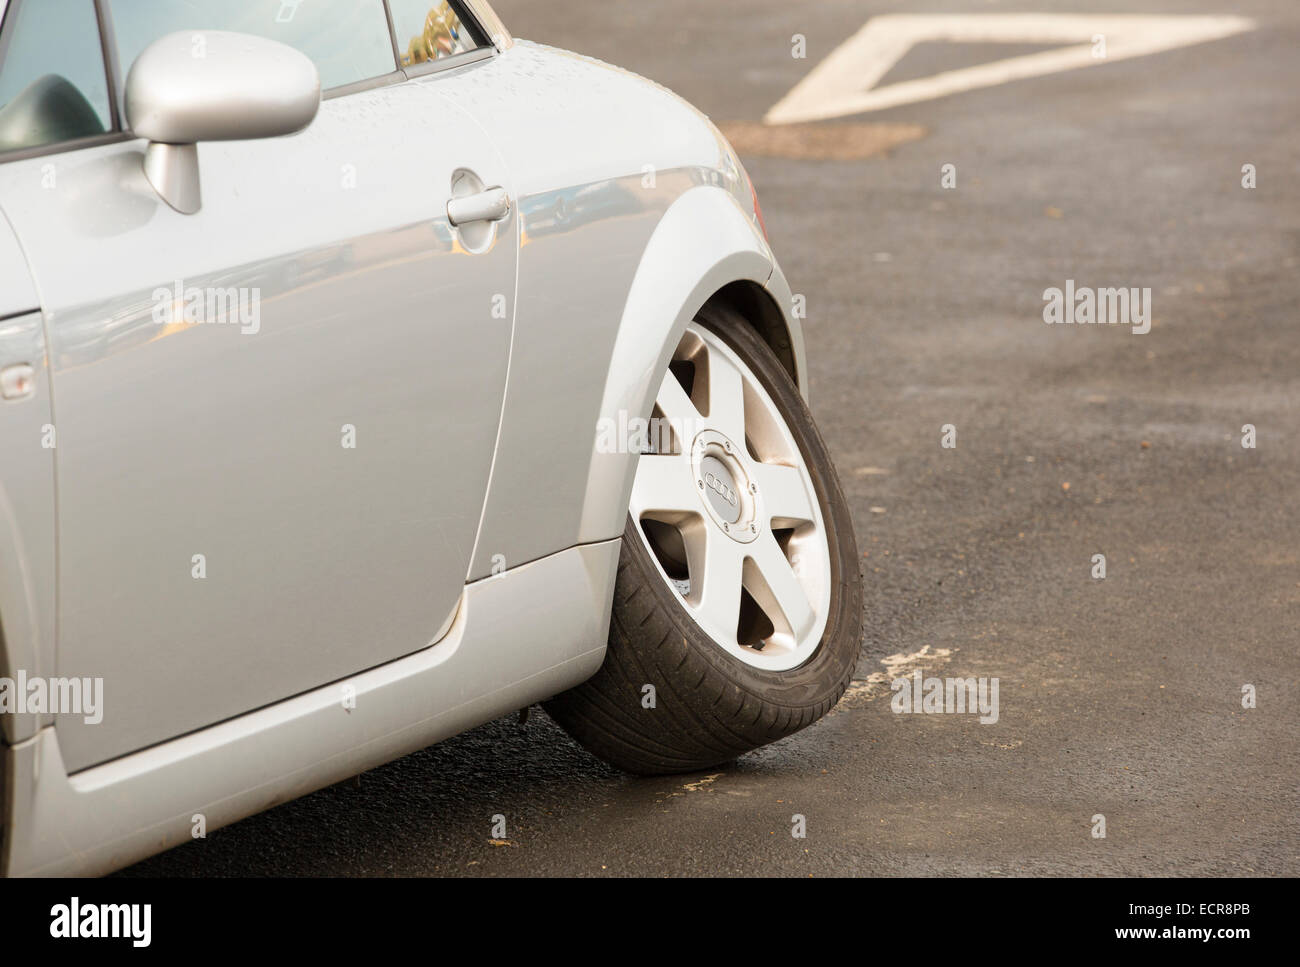 Ein Audi Auto mit einem hinteren Rad herunterfallen. Stockfoto